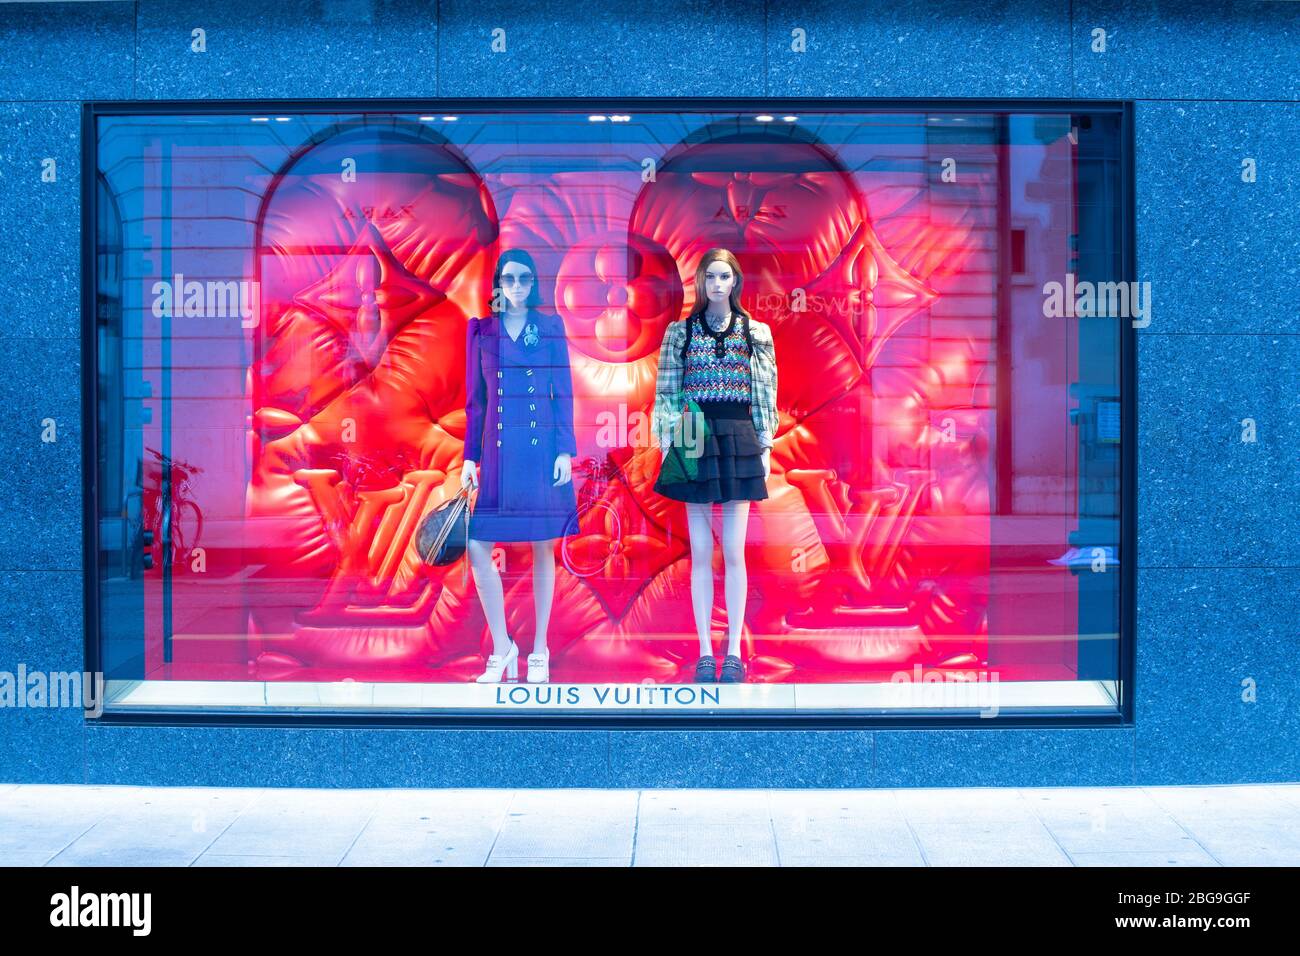 Louis Vuitton store – Stock Editorial Photo © teamtime #125316048